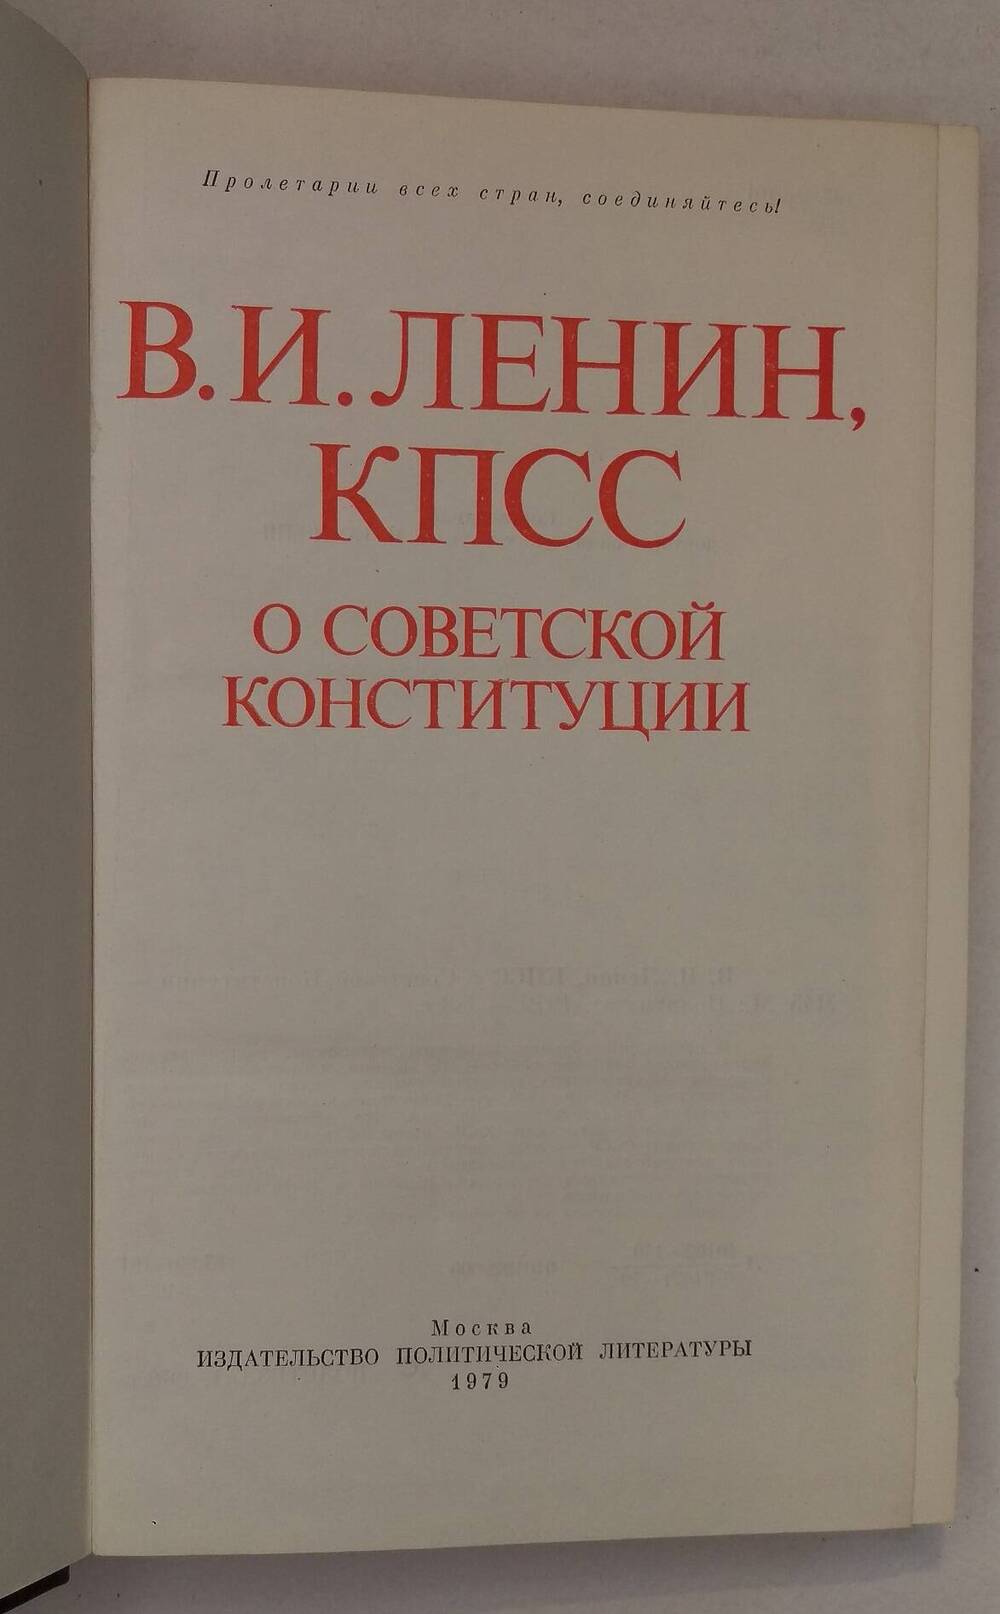 В.И. Ленин, КПСС О советской Конституции.